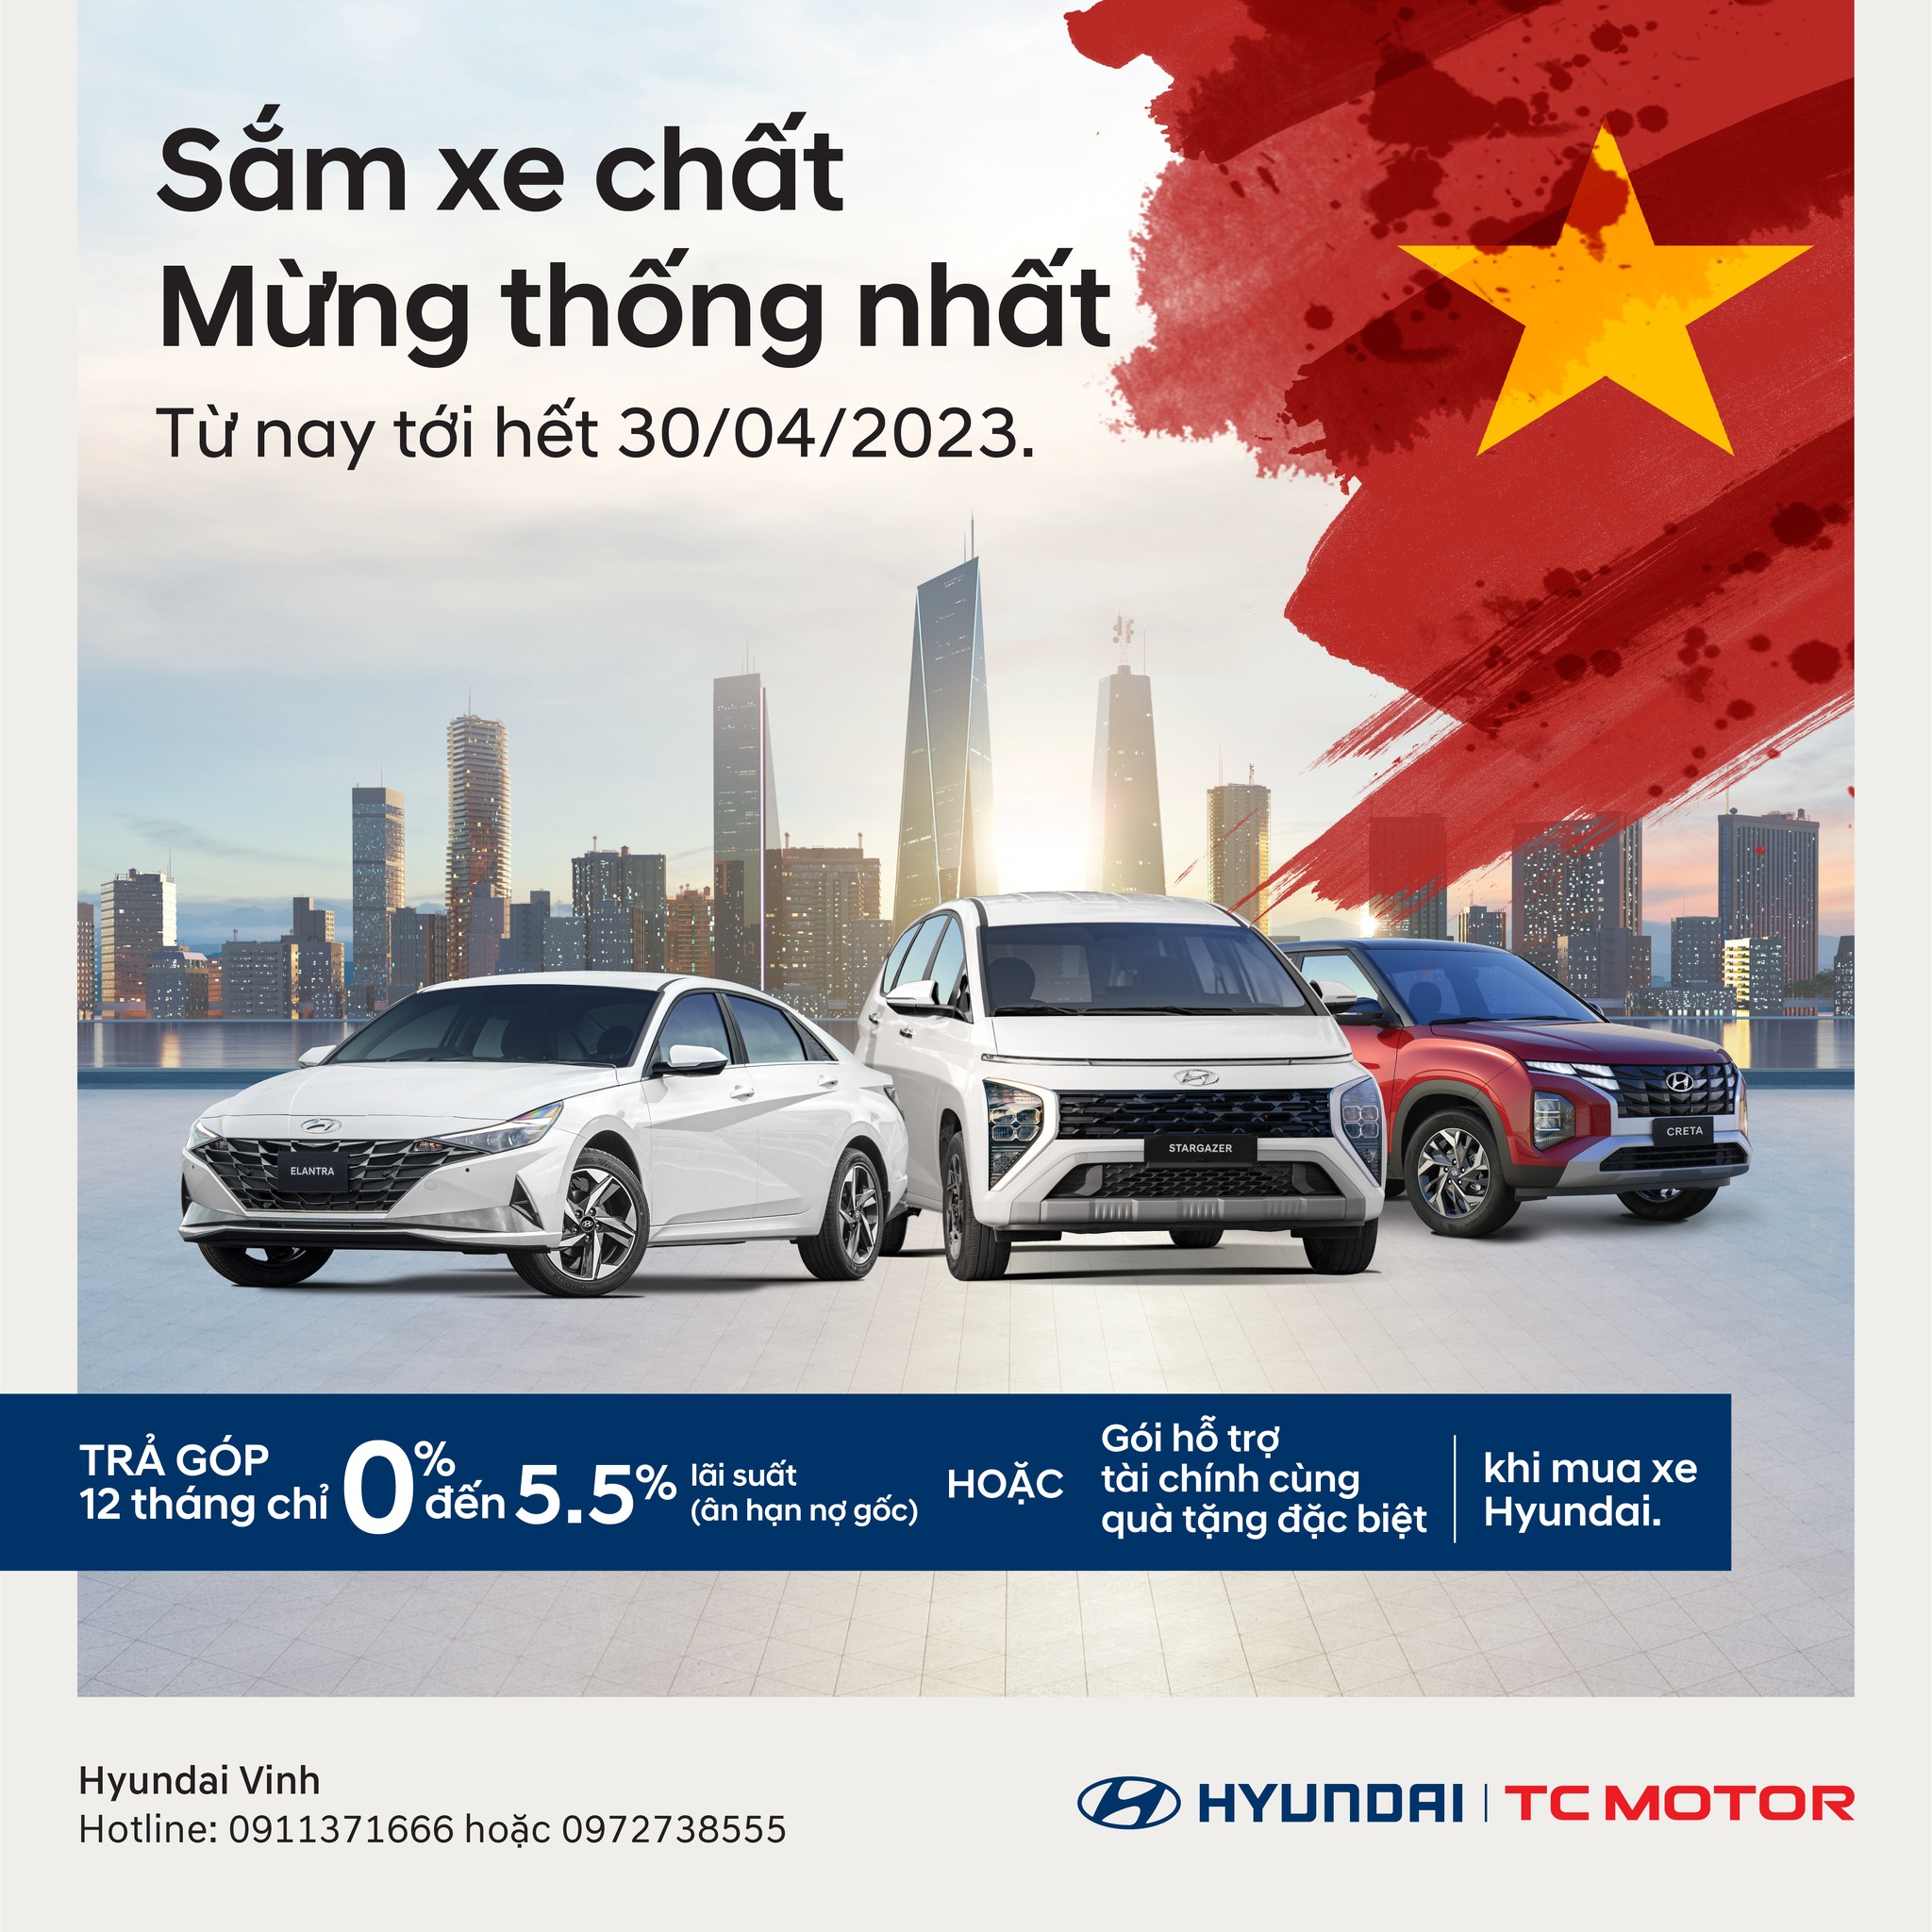 Hyundai Vinh: “Sắm xe chất, Mừng thống nhất”